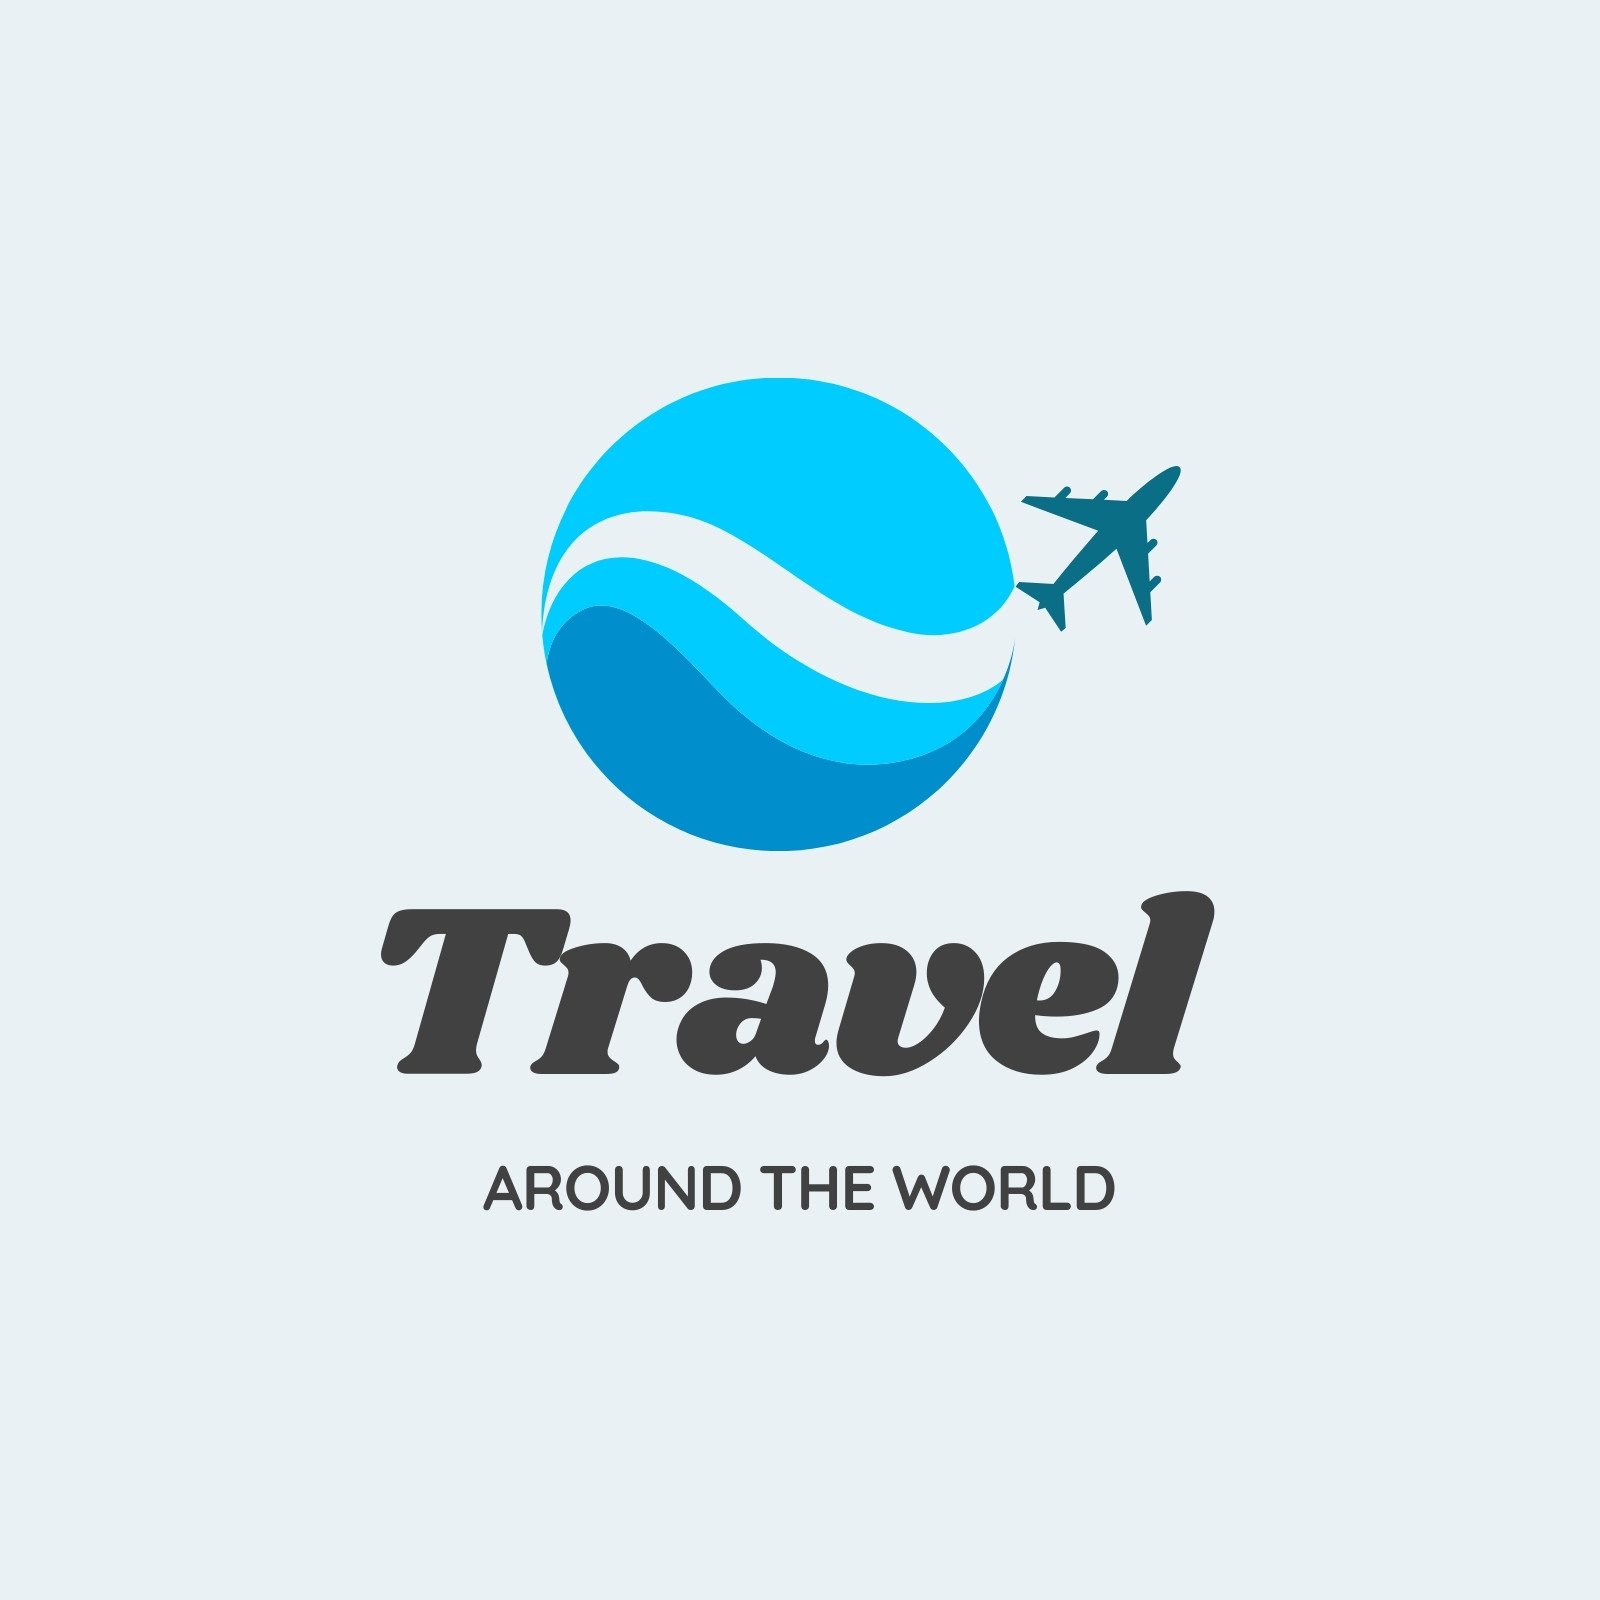 travel and tourism logos design